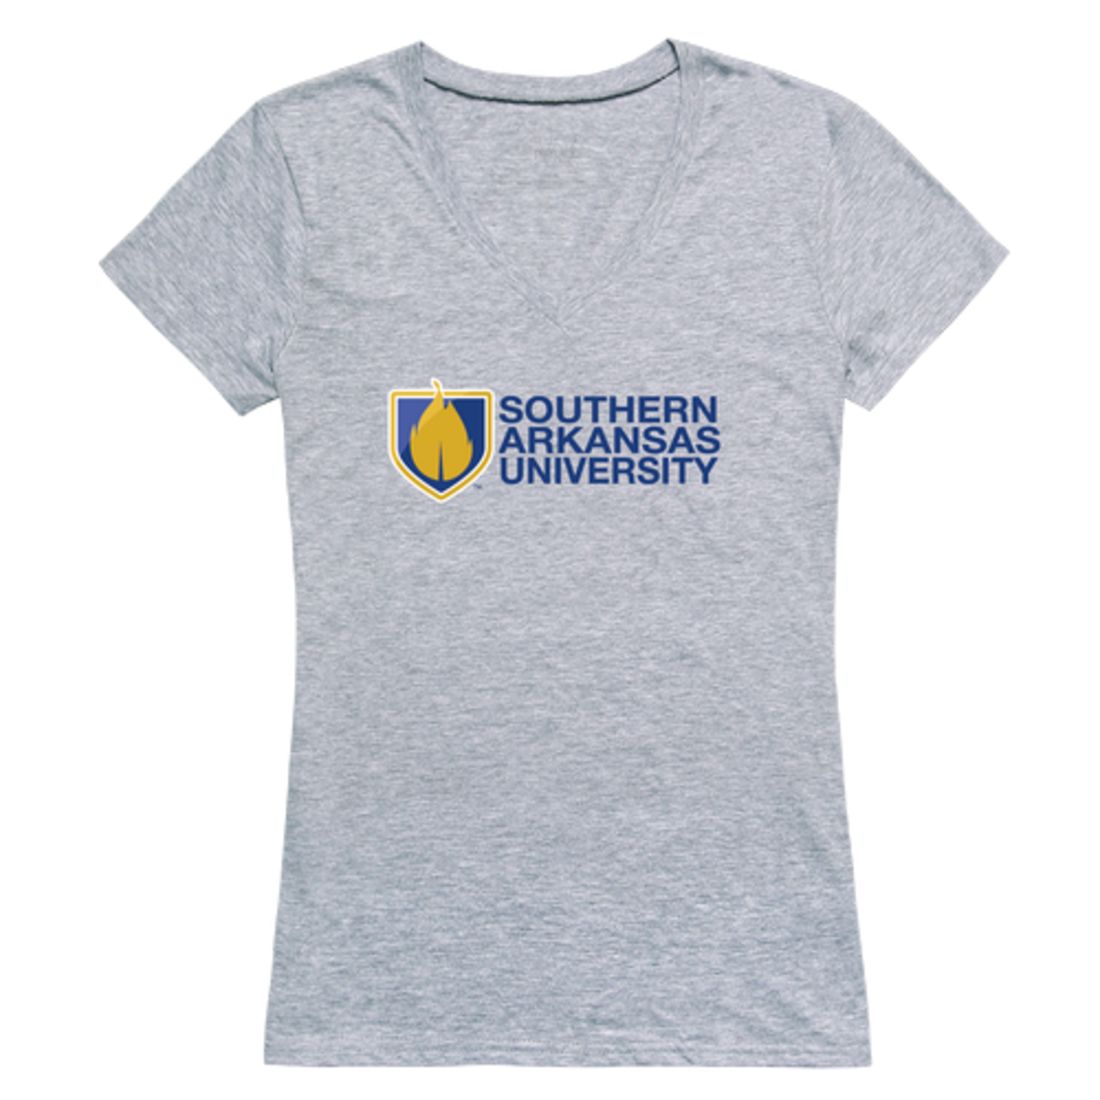 Southern Arkansas University Muleriders Womens Seal T-Shirt Tee